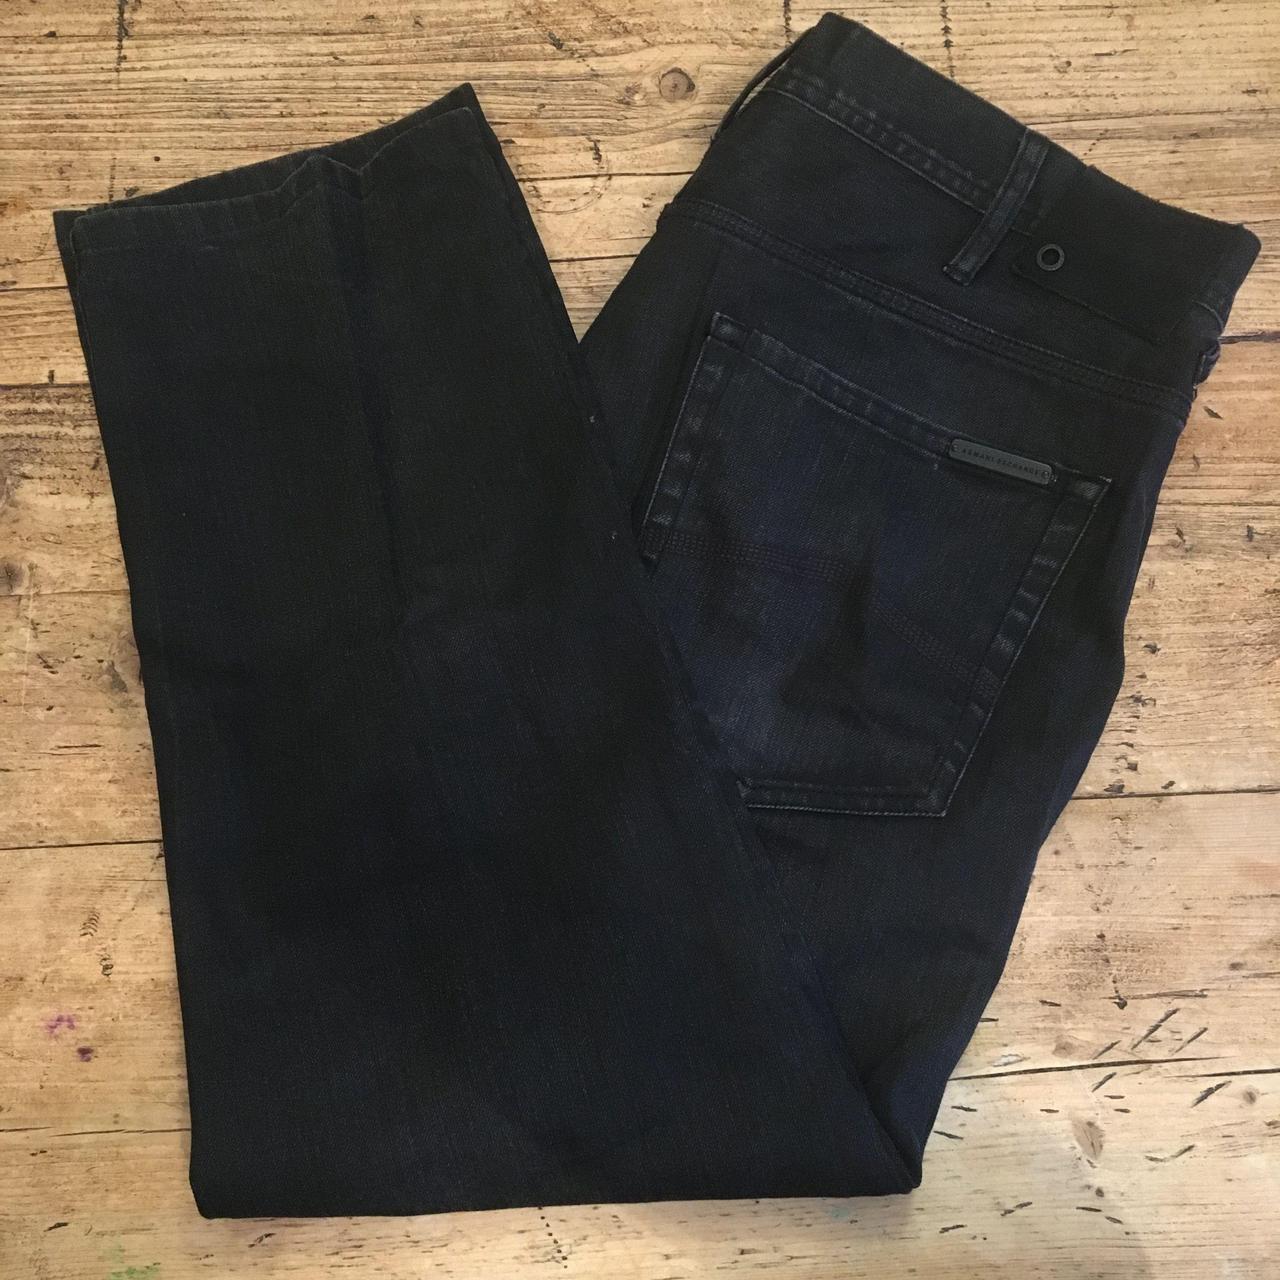 Armani Exchange AX Black jeans Men’s Reg W 38” L... - Depop